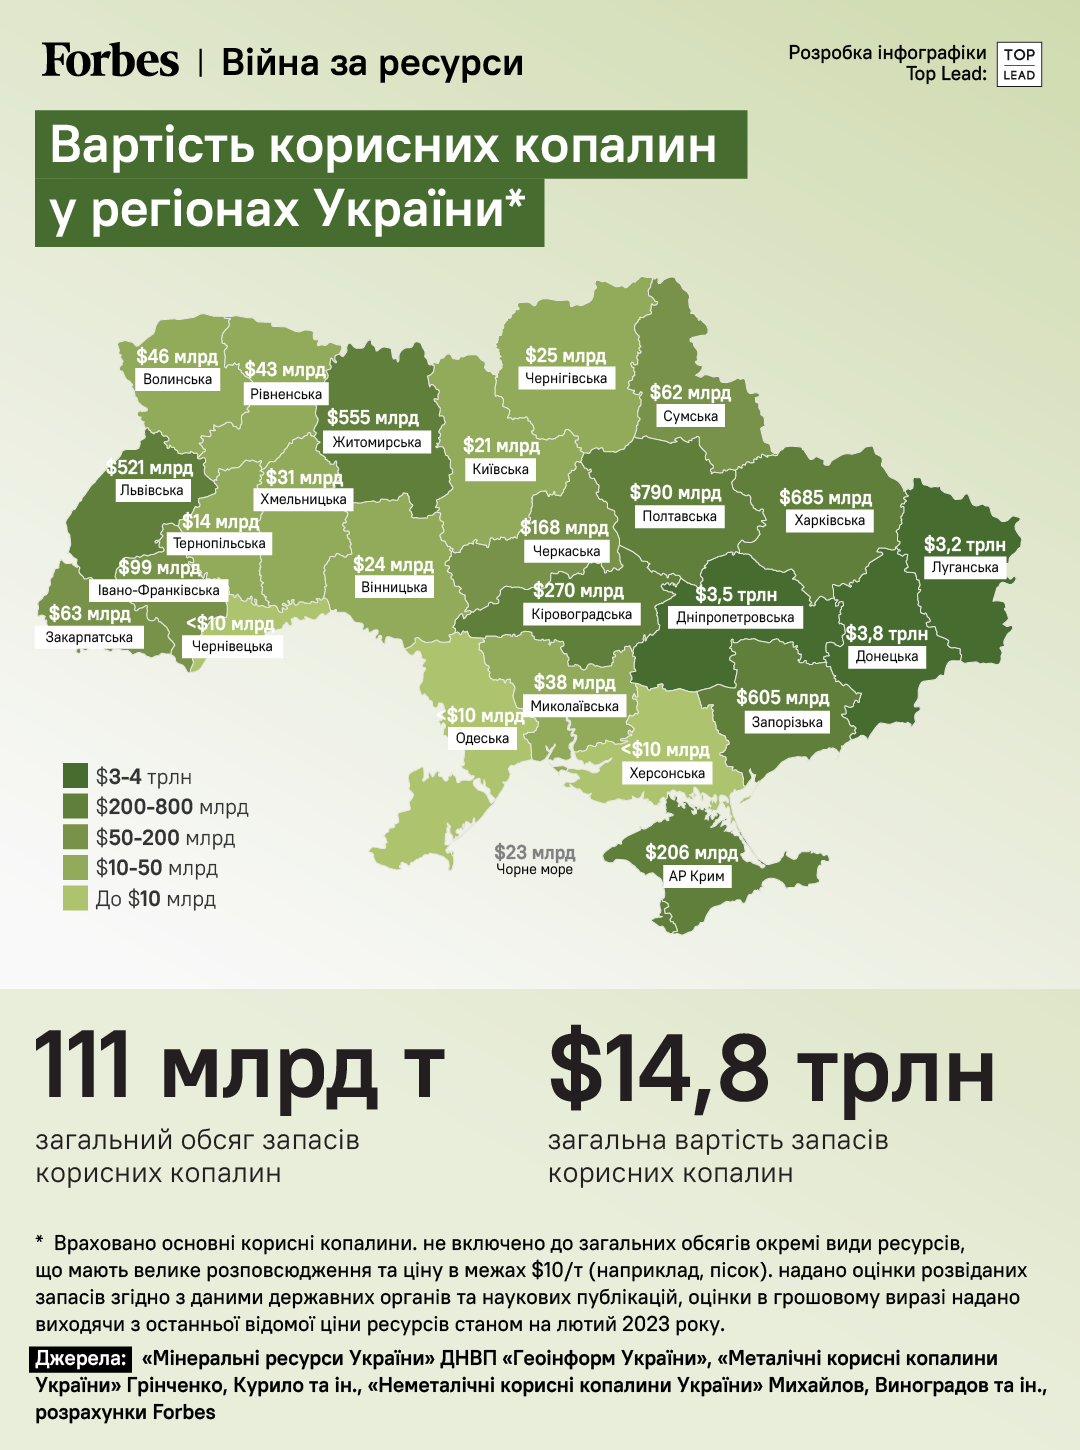 Видання Forbes оцінило вартість корисних копалин України у $14,8 трлн.